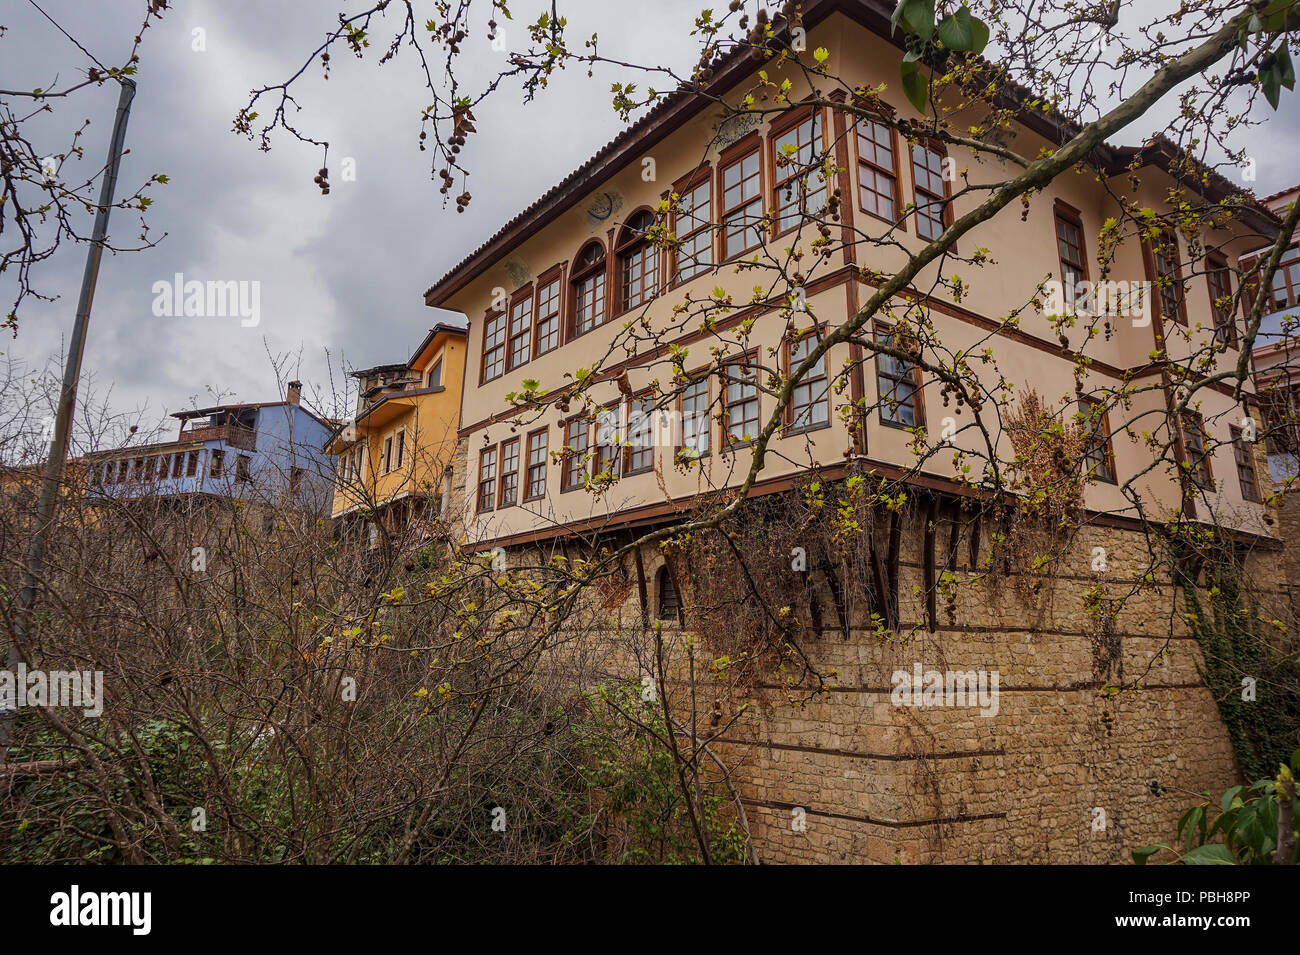 Edifici di architettura tradizionale e le vecchie case a Barbouta, Veria. Barbouta è il nome del quartiere ebraico di Veria, una piccola città in Macedonia, Foto Stock